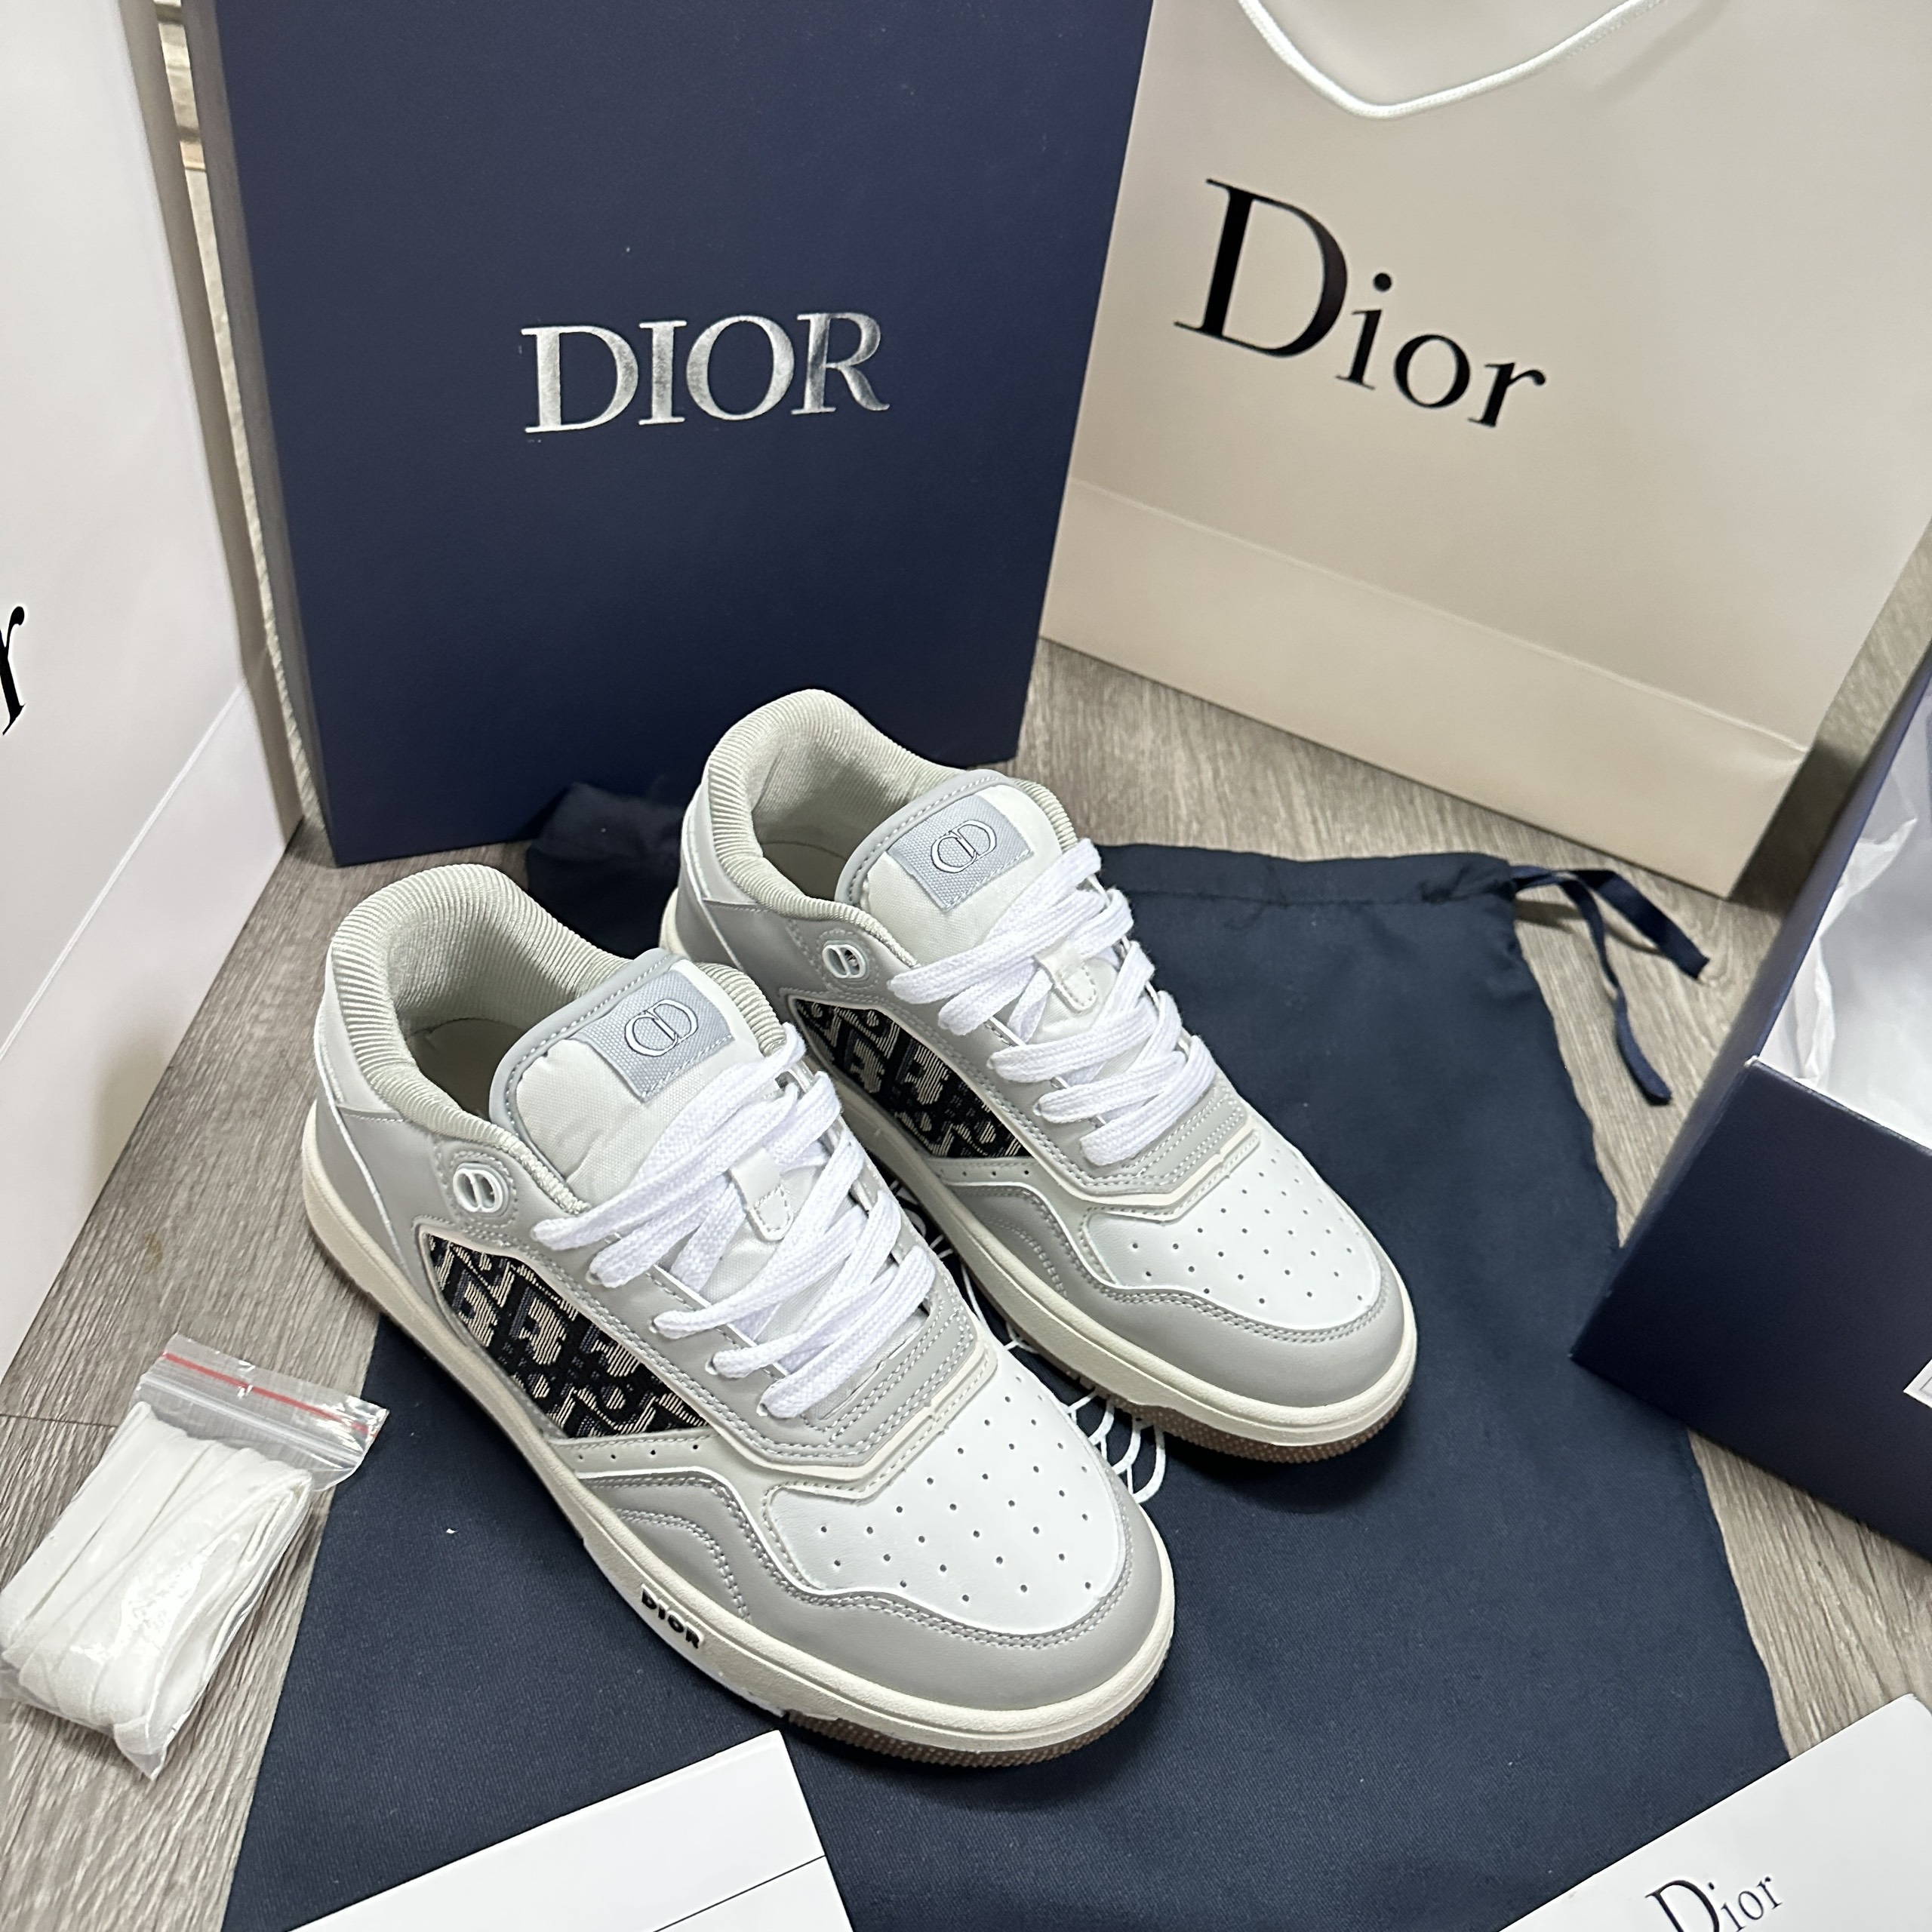 Dior  Other  Dior Shoe Box  Poshmark